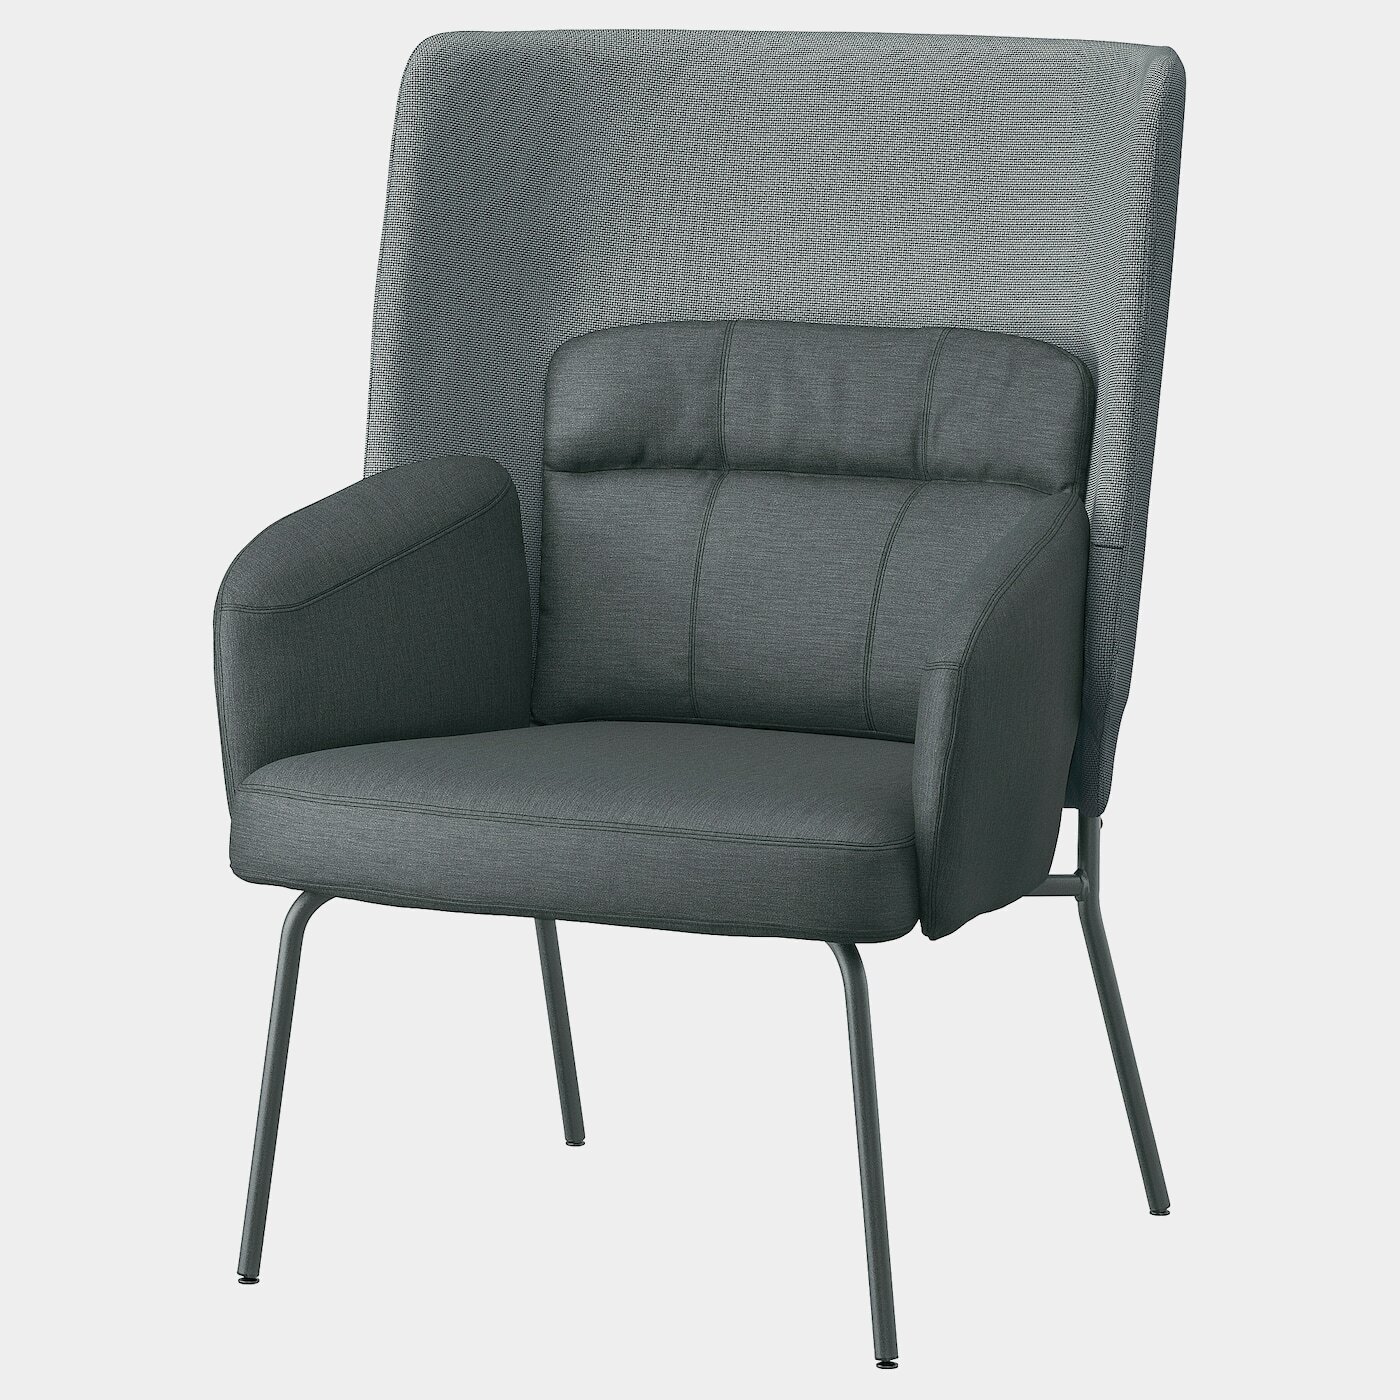 BINGSTA Sessel mit hoher Rückenlehne  - Sessel & Récamieren - Möbel Ideen für dein Zuhause von Home Trends. Möbel Trends von Social Media Influencer für dein Skandi Zuhause.